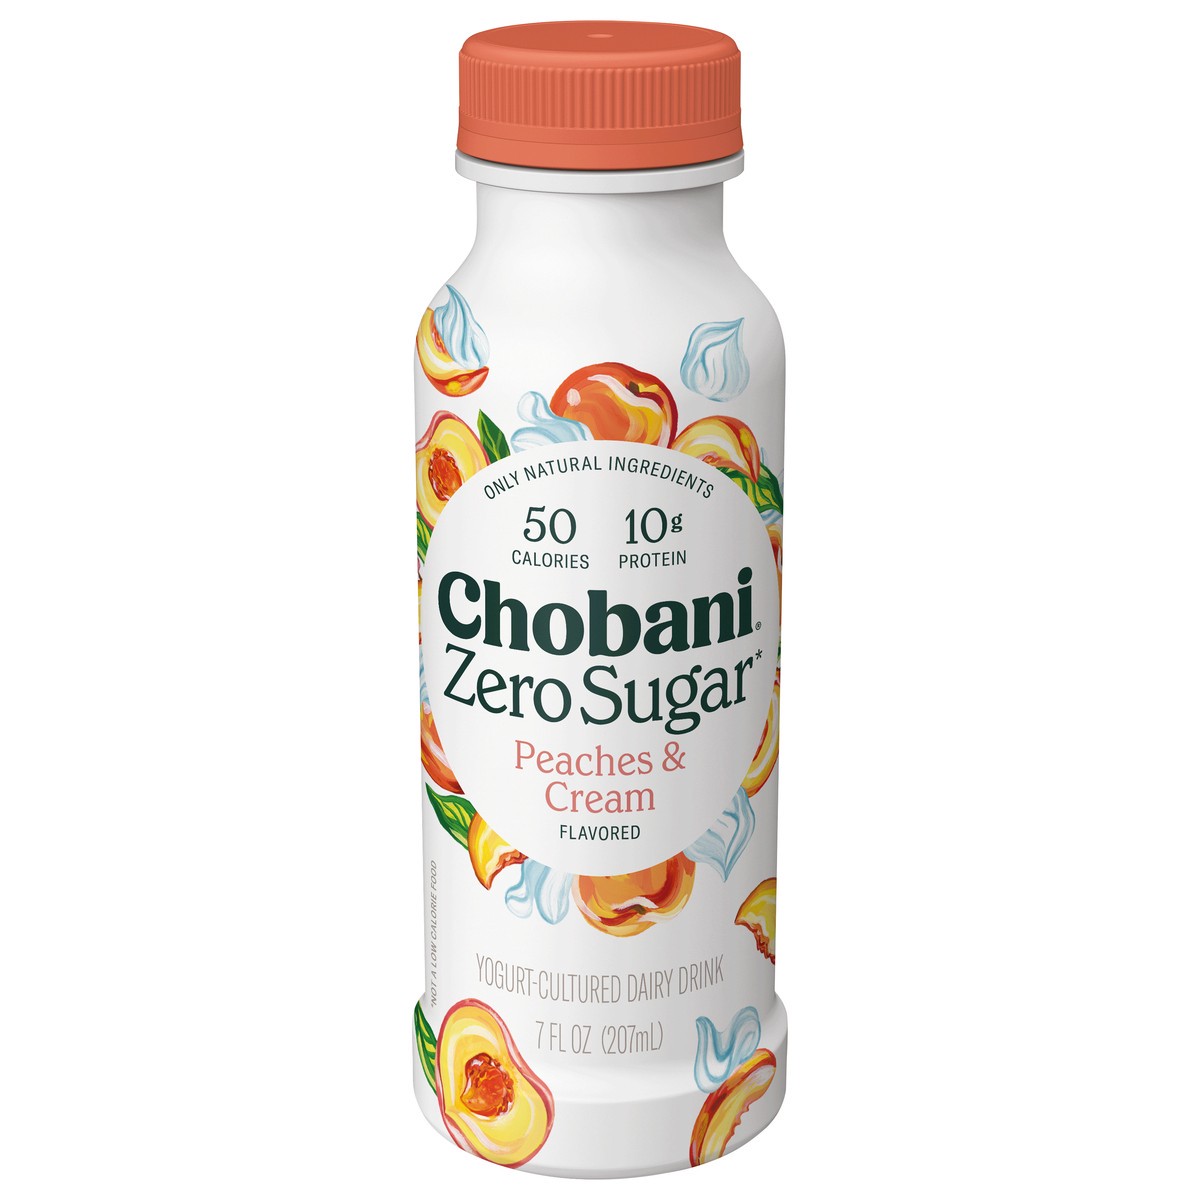 slide 1 of 8, Chobani Peach & Cream Yogurt-Cultured Dairy Drink, 7 fl oz